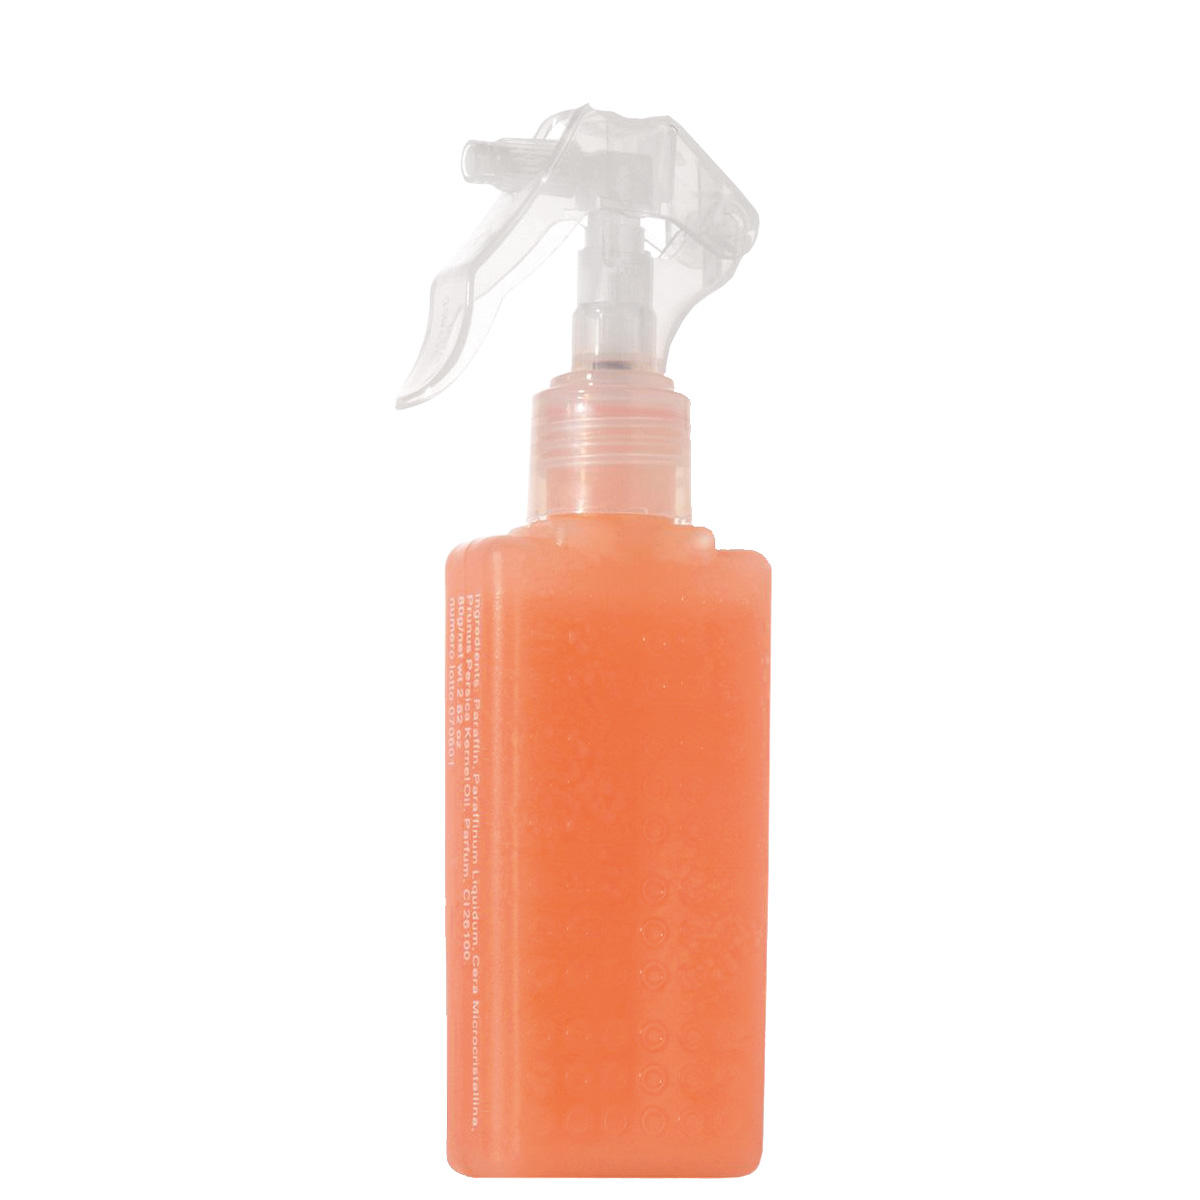 LCN Kerosene spray 6 pack 6 x 80 ml - 1